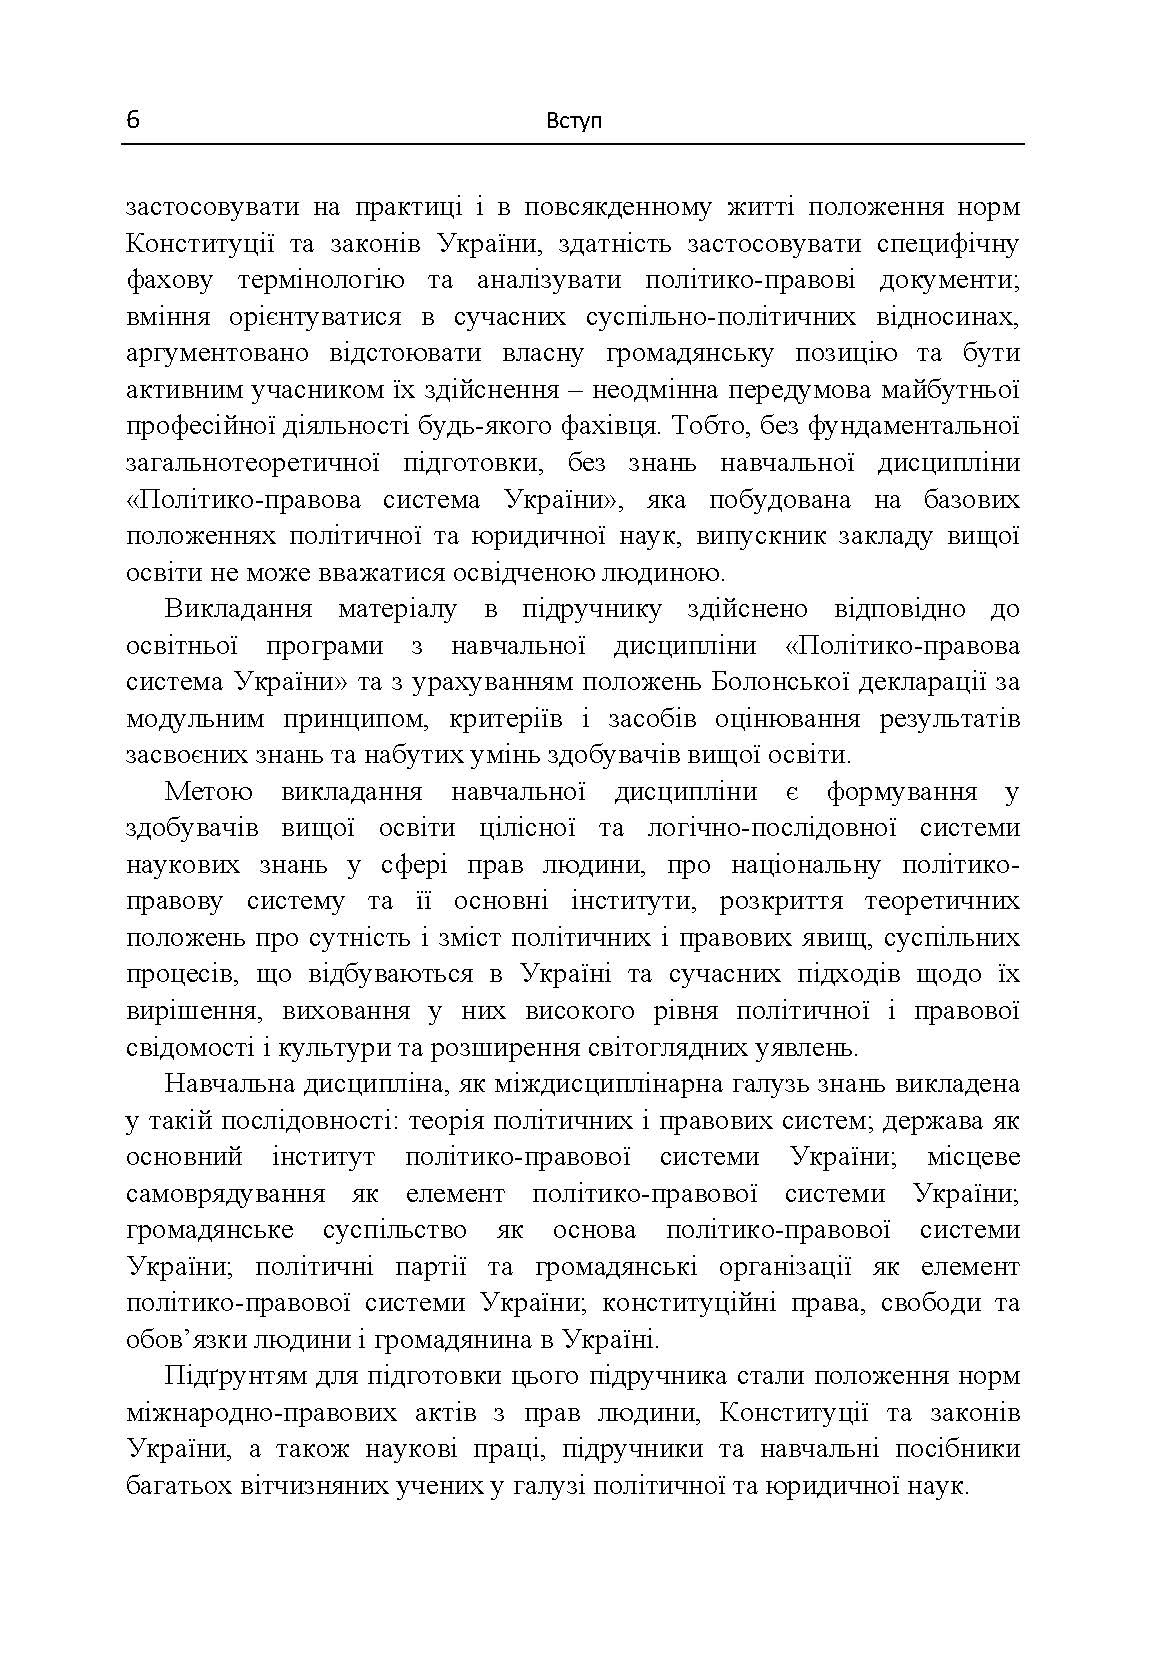 Політико-правова система України. Автор — Кириченко В.М.. 